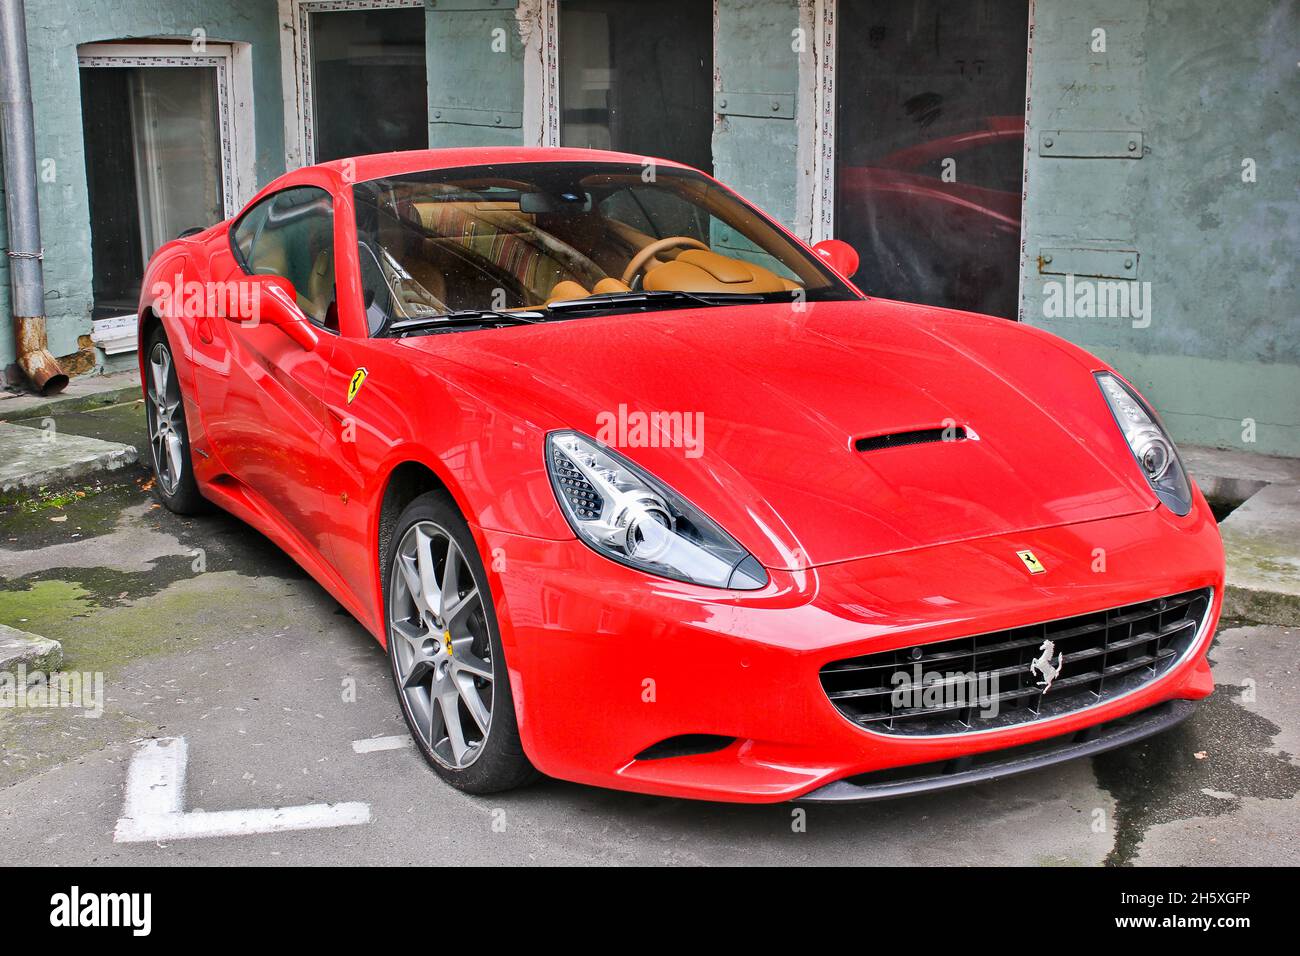 Kiev, Ukraine - April 26, 2015: Red Ferrari California in the city Stock Photo